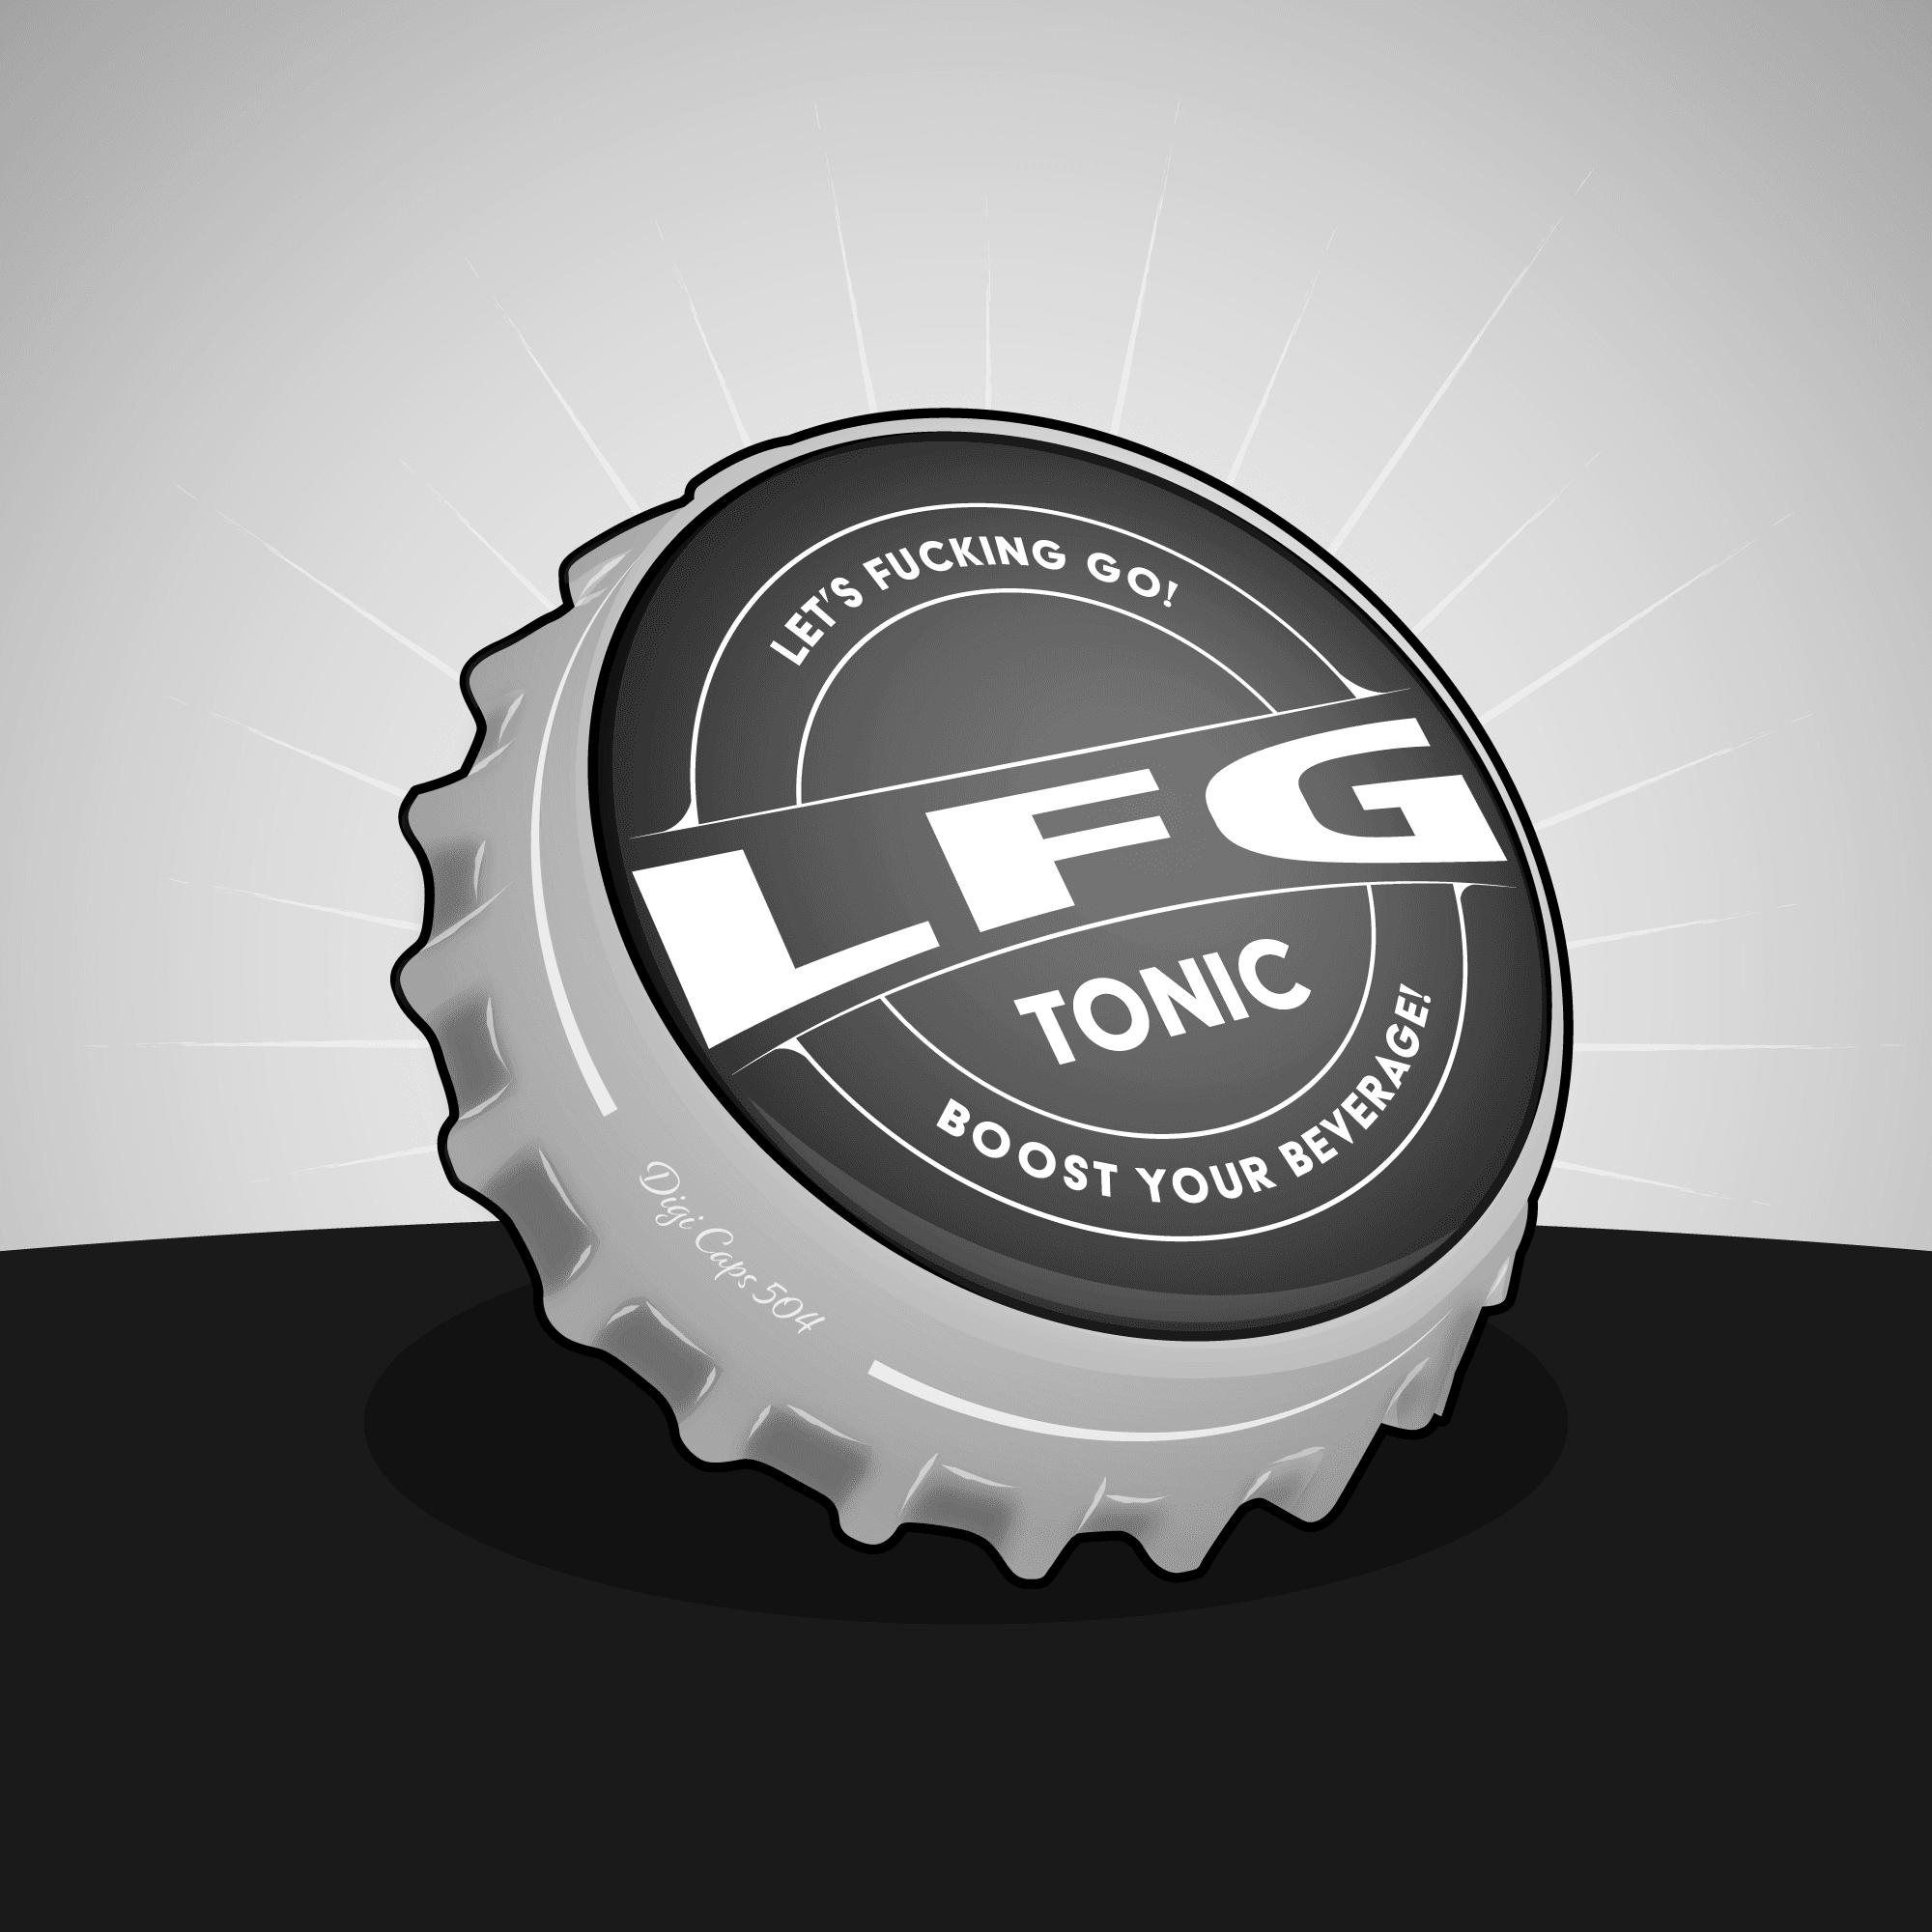 LFG Tonic Bottle Cap